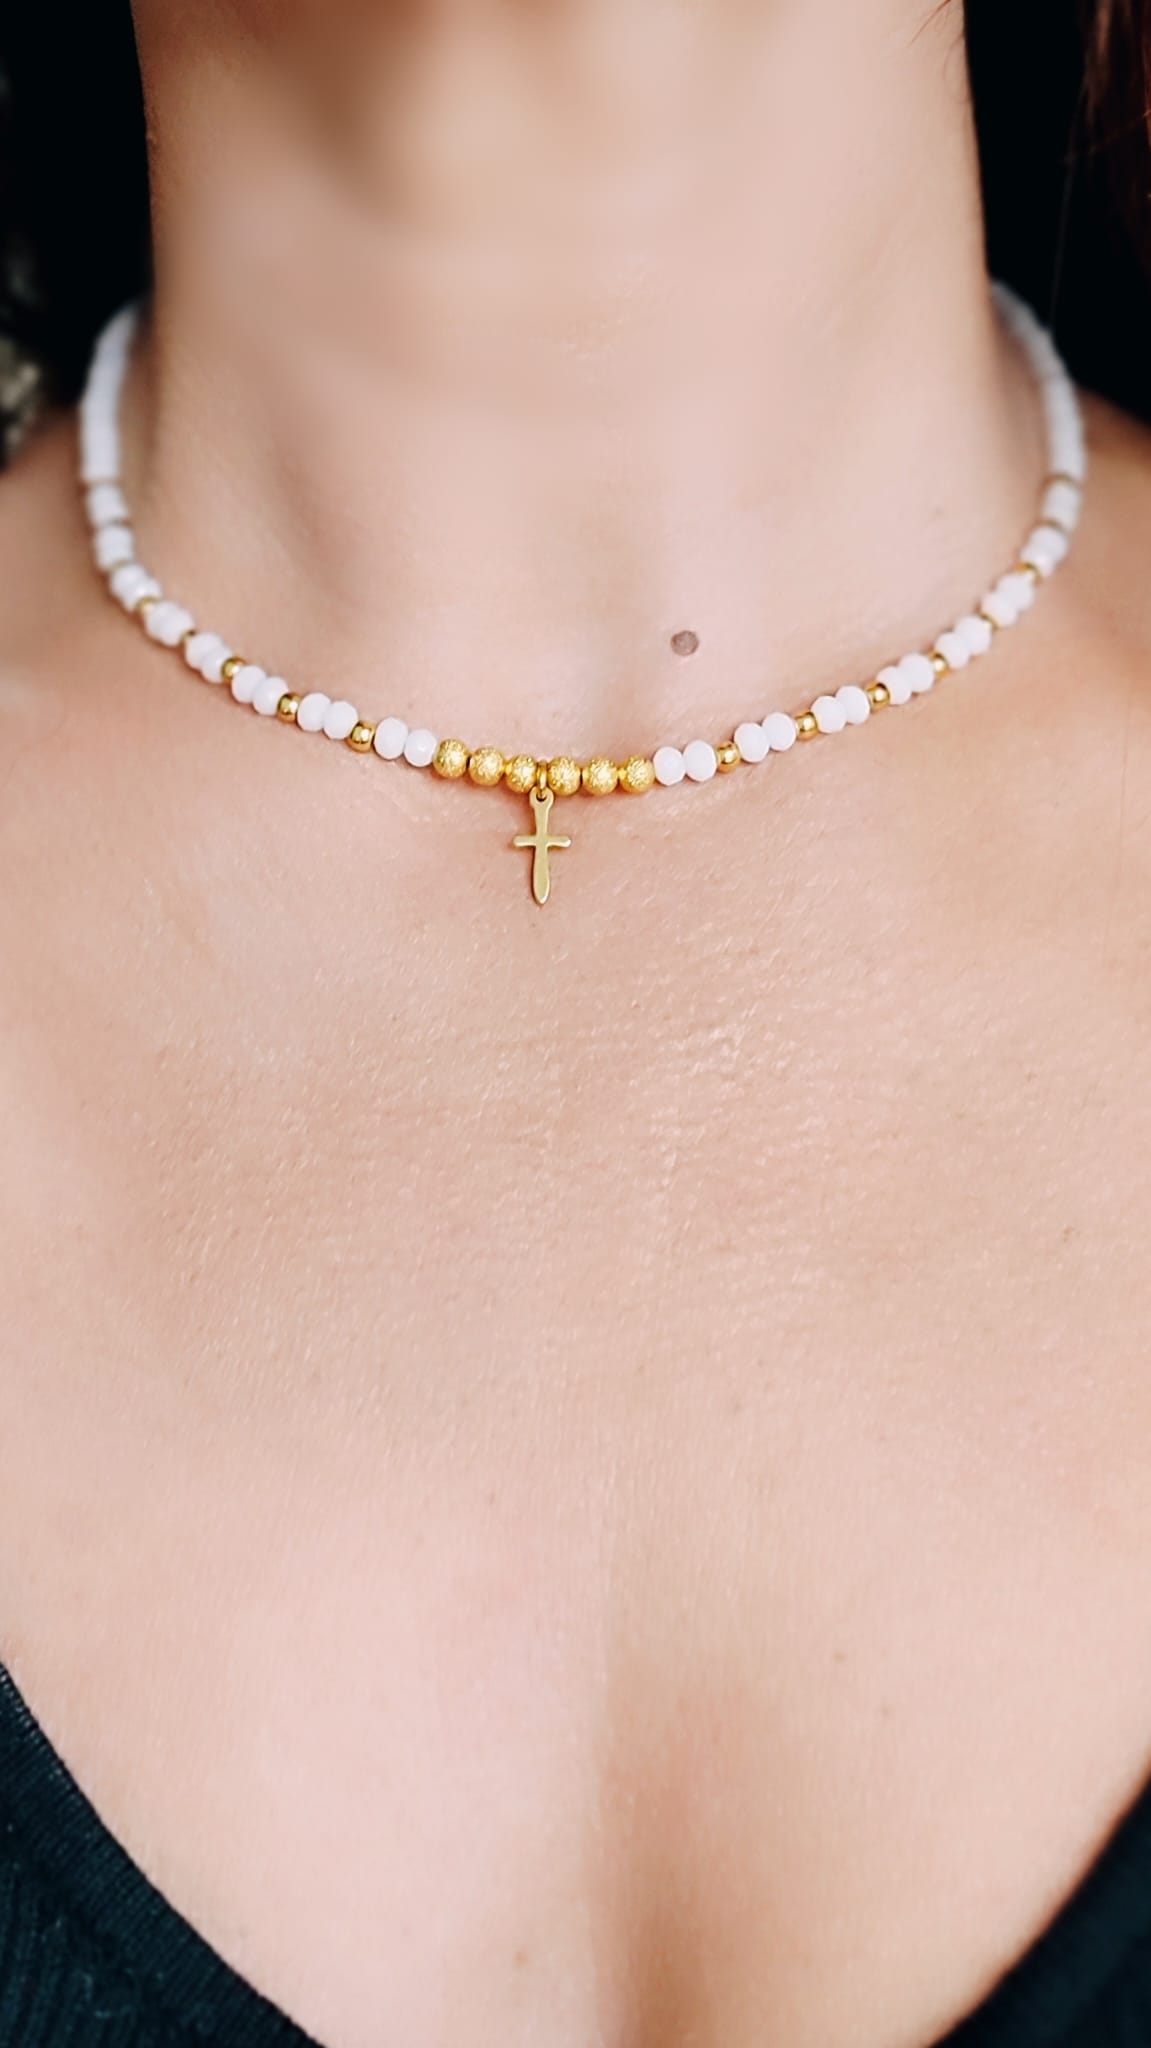 Vista en el escote del Collar de cristal blanco y bolitas doradas mate, en el centro tiene una pequeña cruz de acero bañada en oro